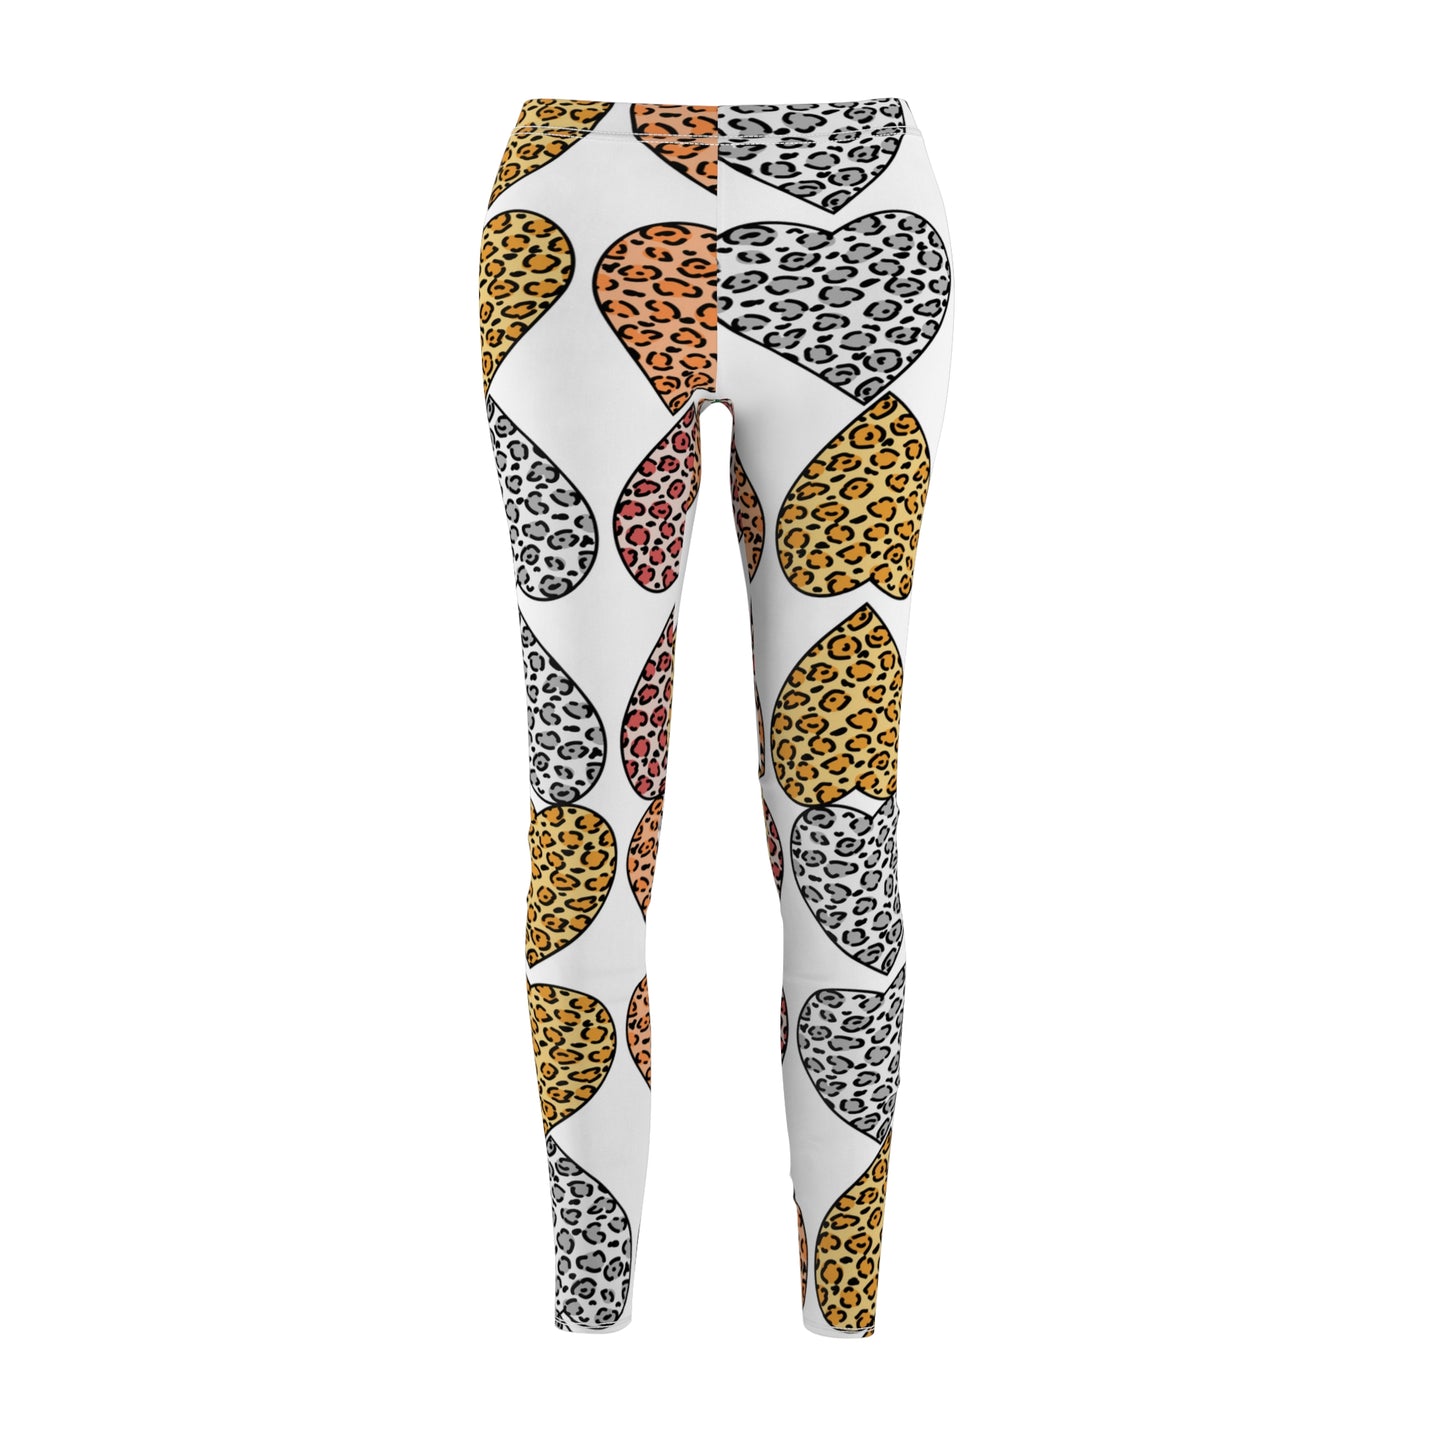 Leopard Heart Cut & Sew Casual Leggings, best friend graduation gift, gift for best friend female, winter leggings